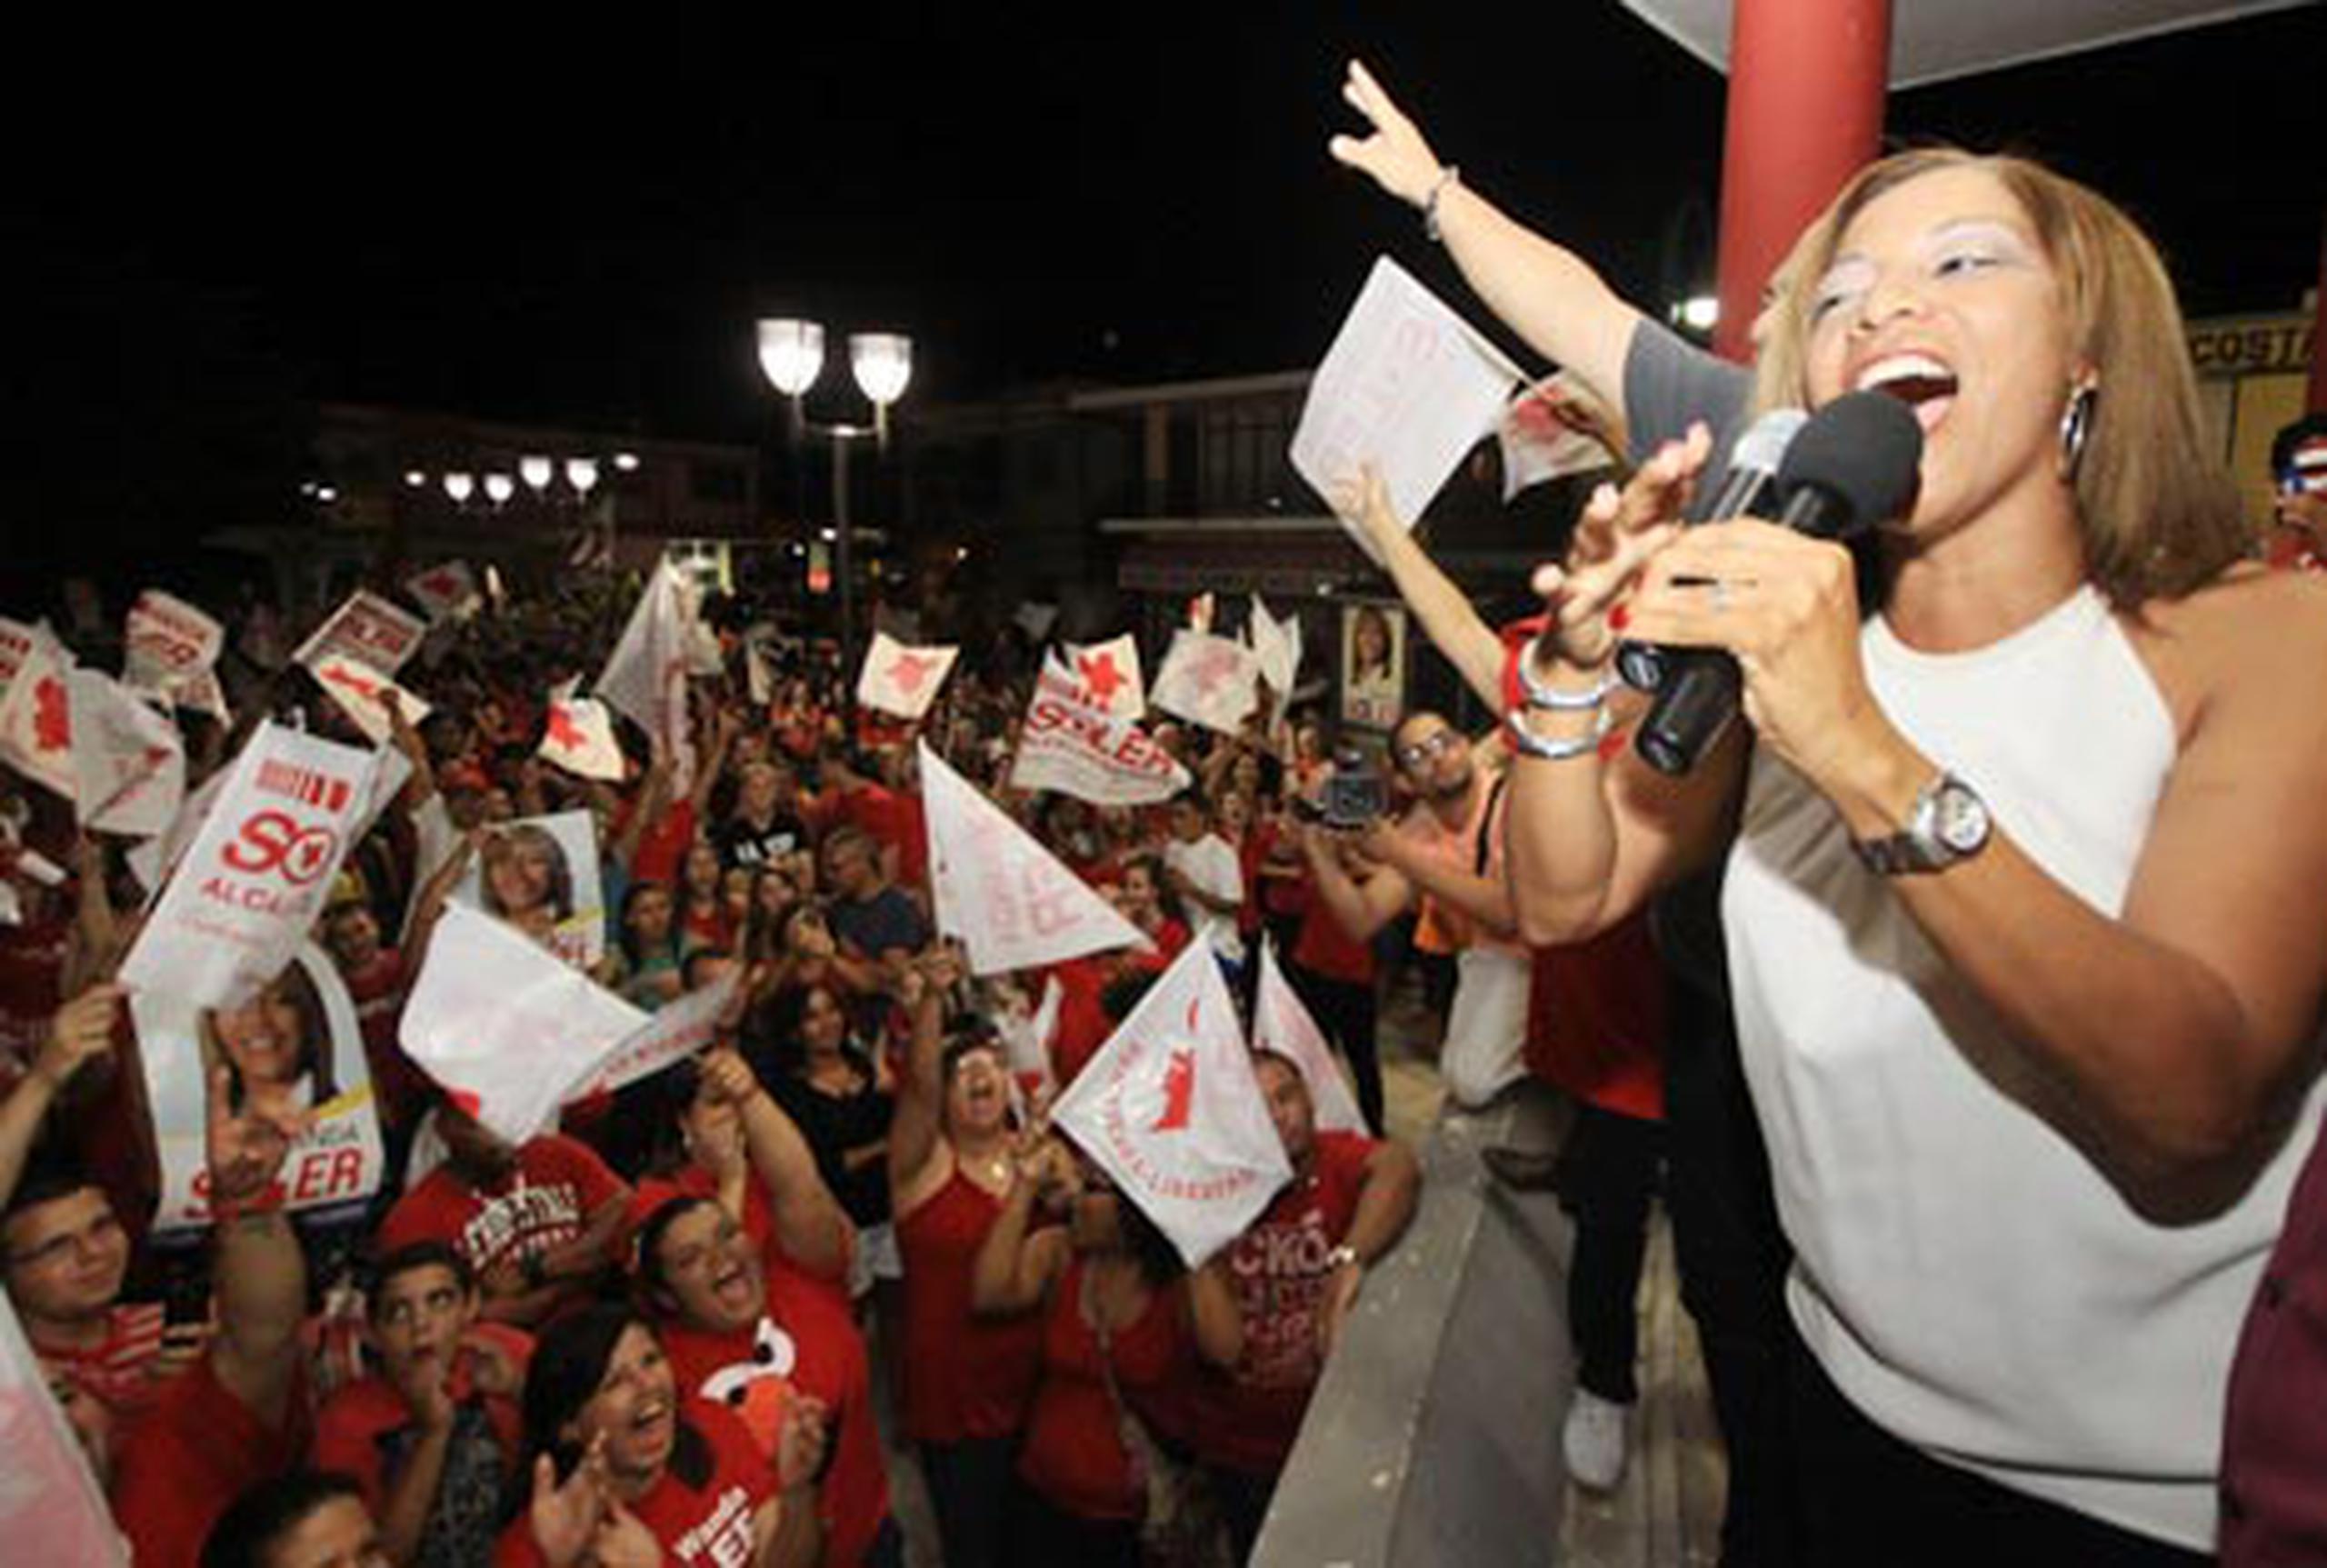 Wanda Soler celebra junto a sus seguidores su aparente triunfo. (nelson.reyes@gfrmedia.com)